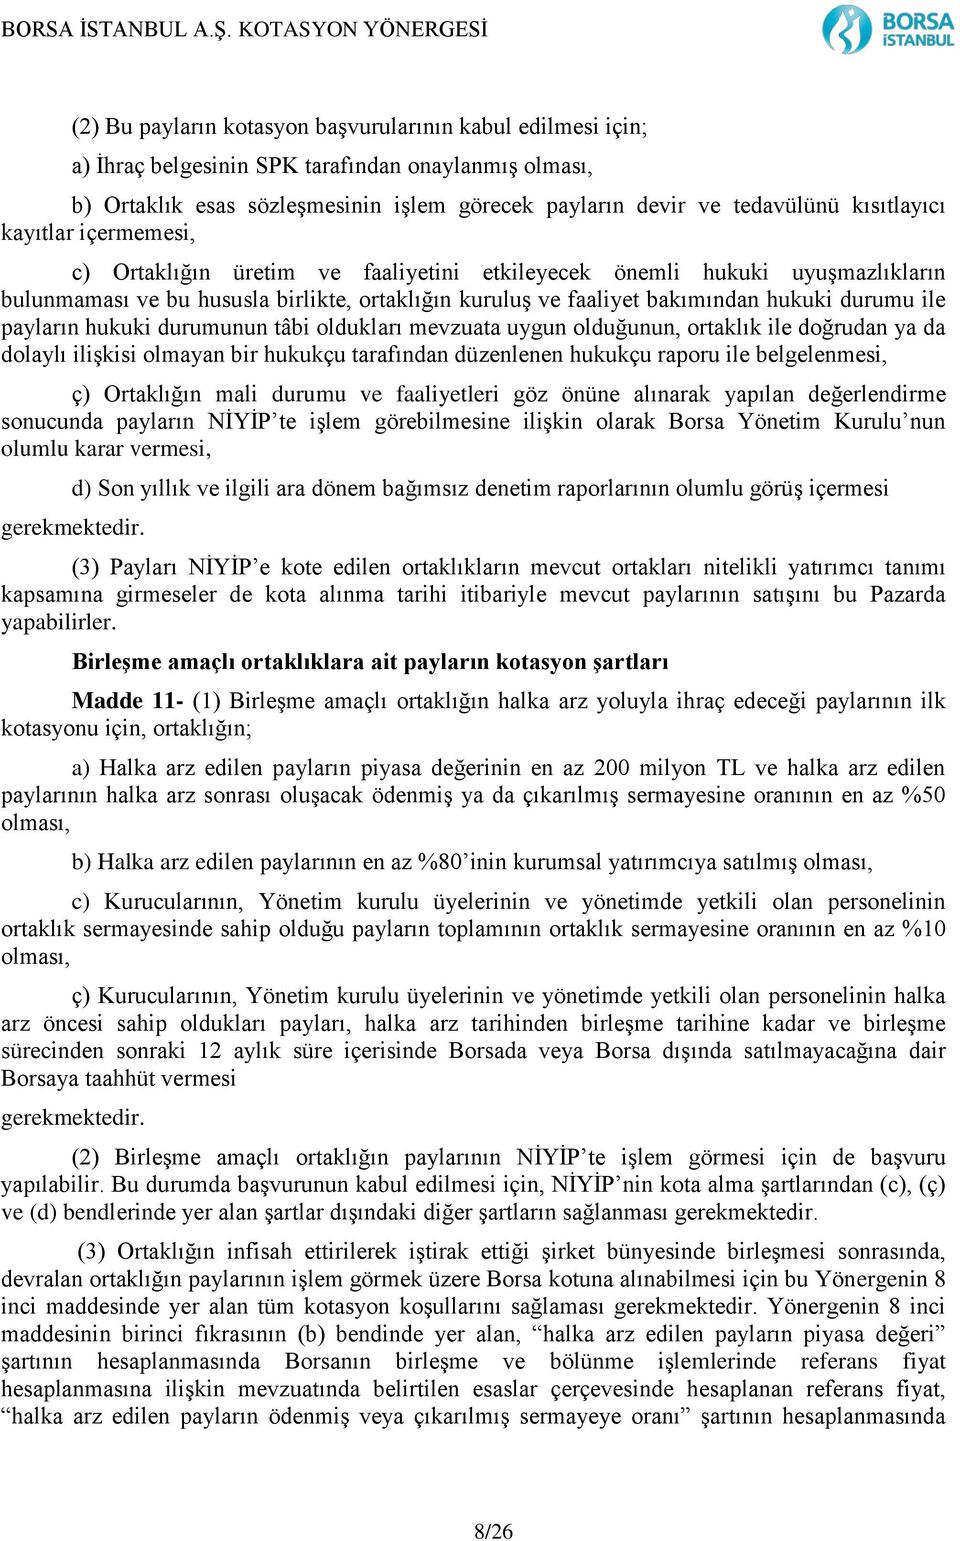 BORSA İSTANBUL A.Ş. KOTASYON YÖNERGESİ - PDF Ücretsiz indirin